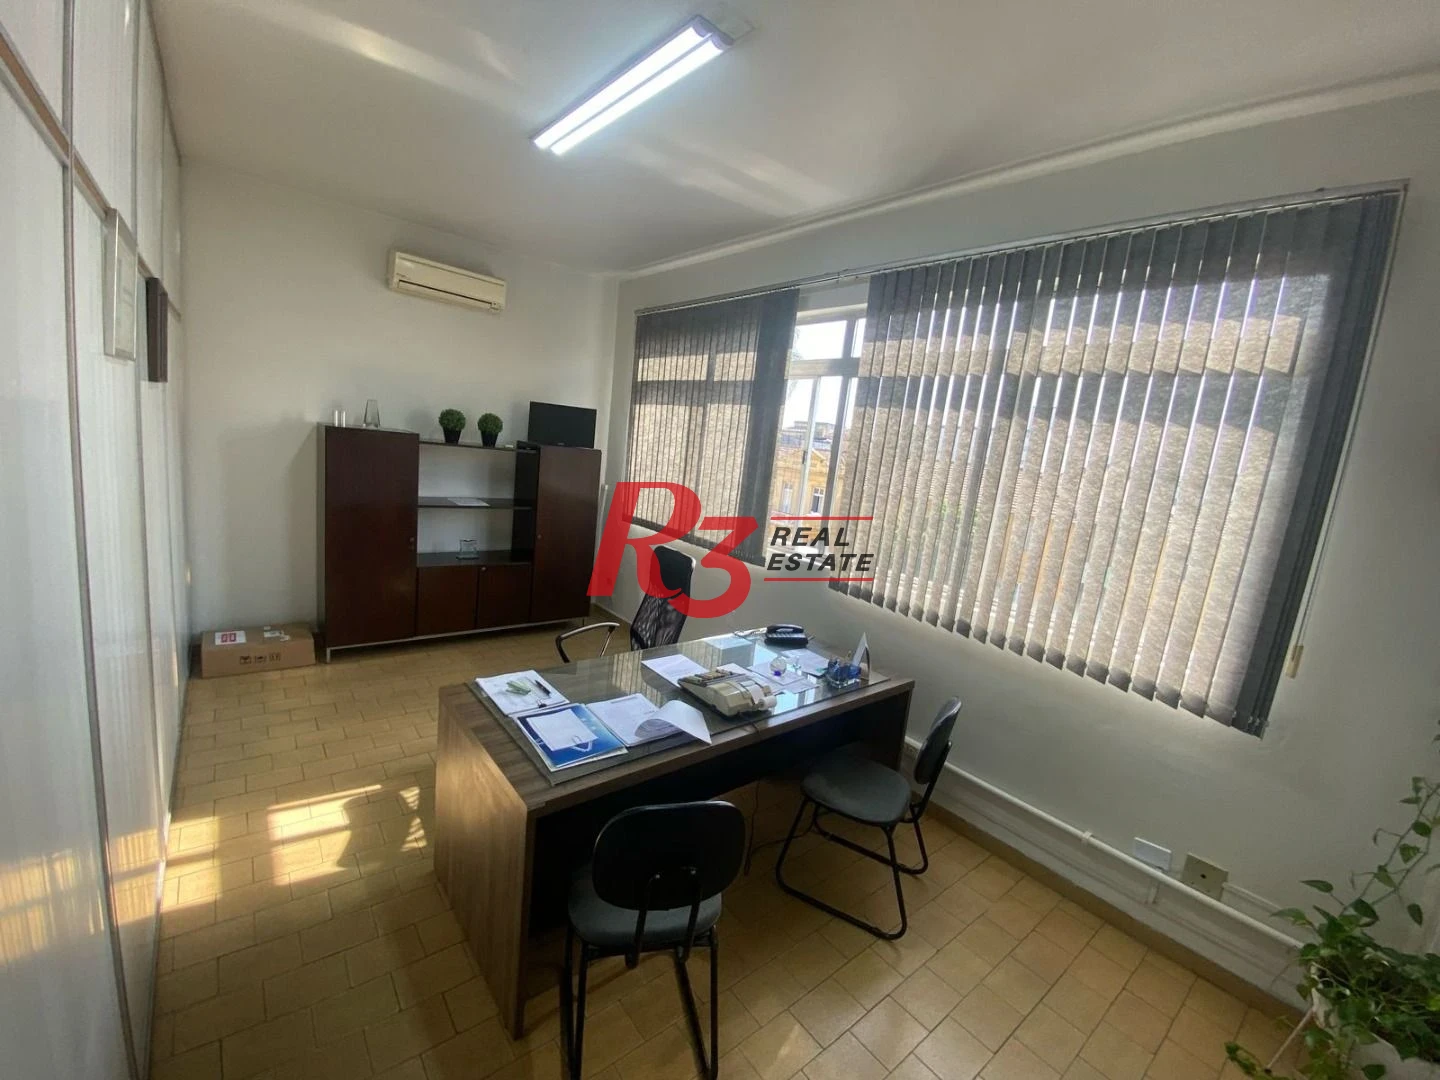 Sala à venda, 250 m² por R$ 480.000,00 - Centro - Santos/SP